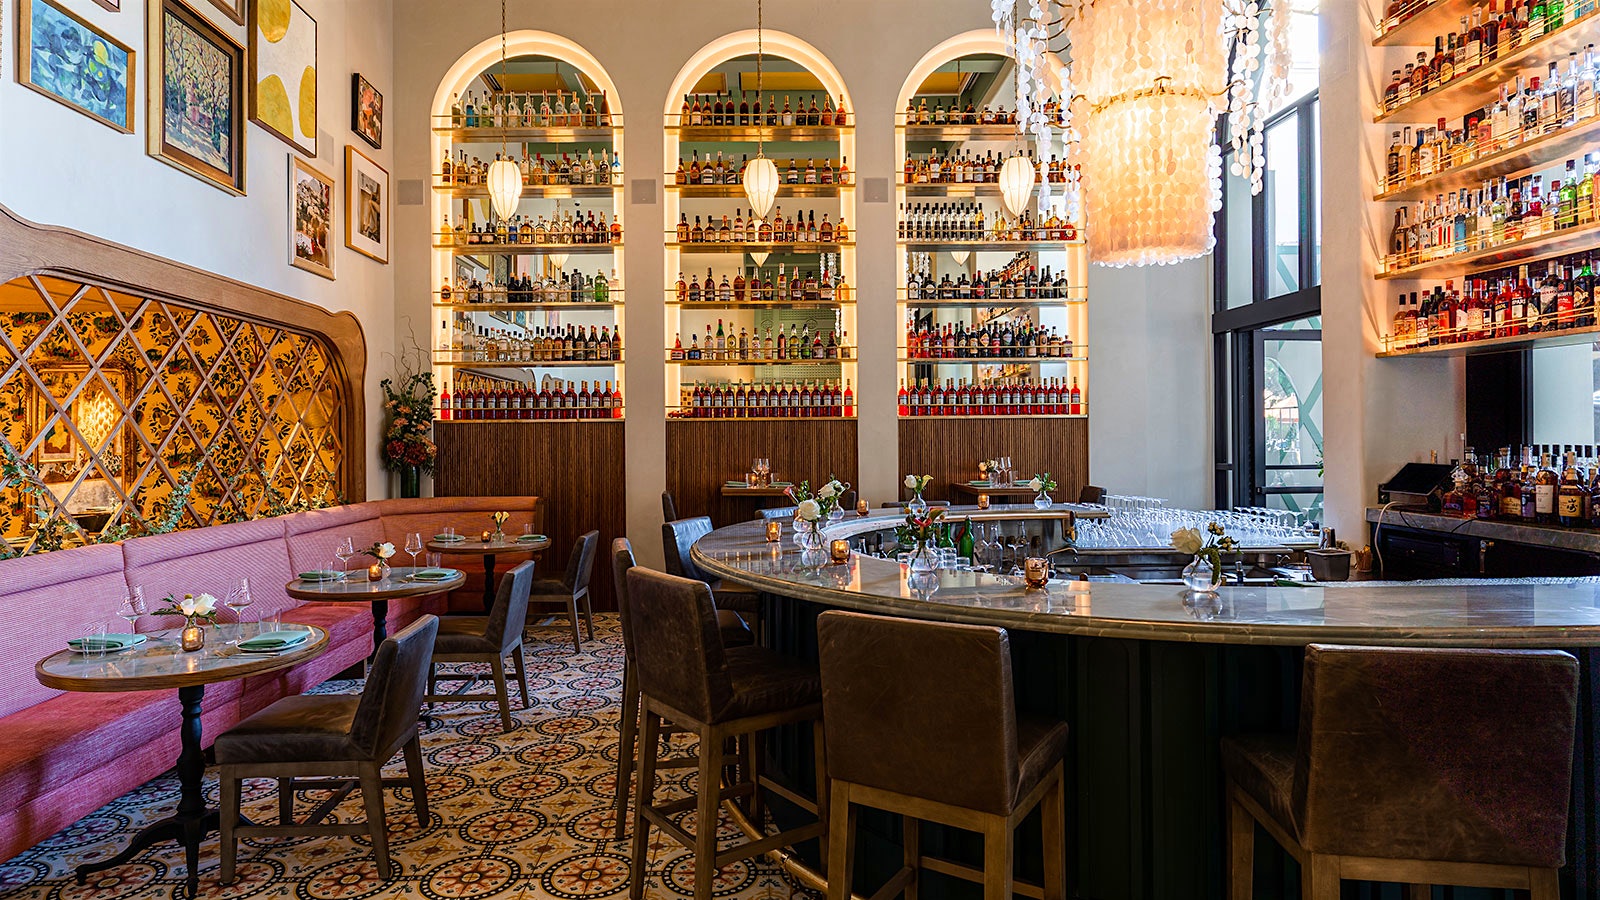  El área del bar de Marisi cuenta con una barra en forma de media luna, banquetas color granate e inserciones de pared arqueadas con estantes para licores y botellas de vino.